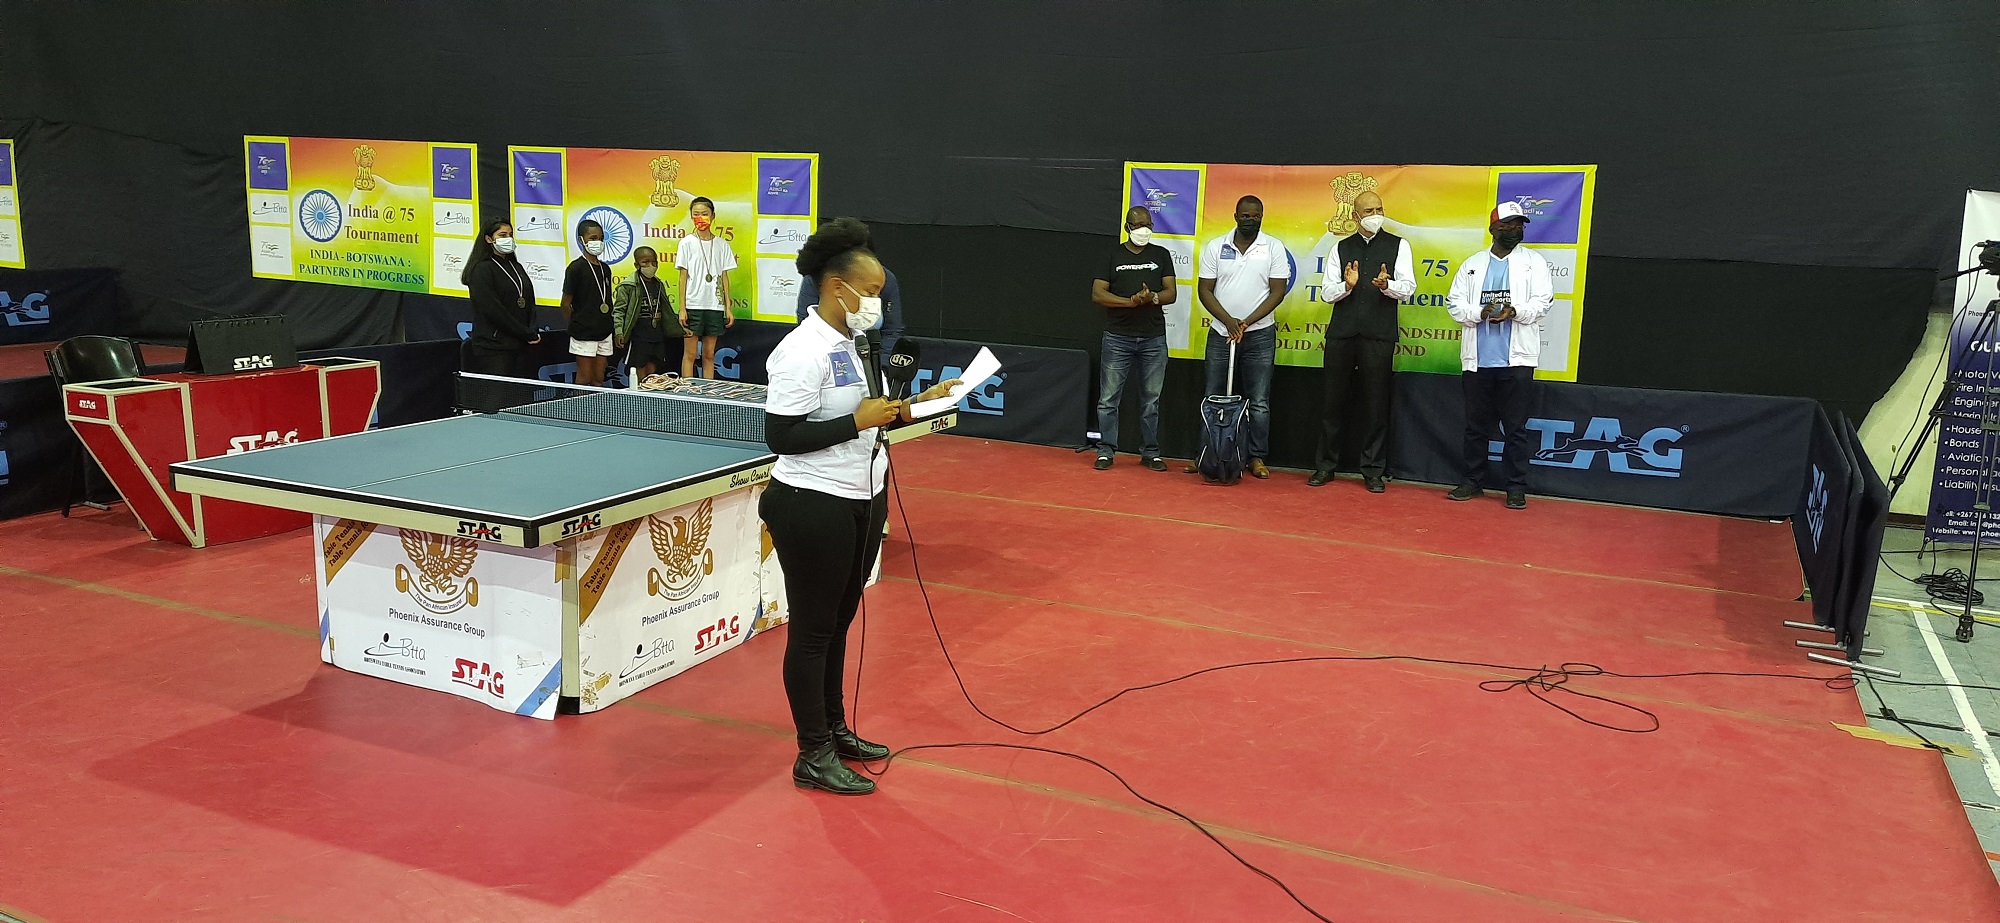 India @ 75 (Table Tennis) Tournament